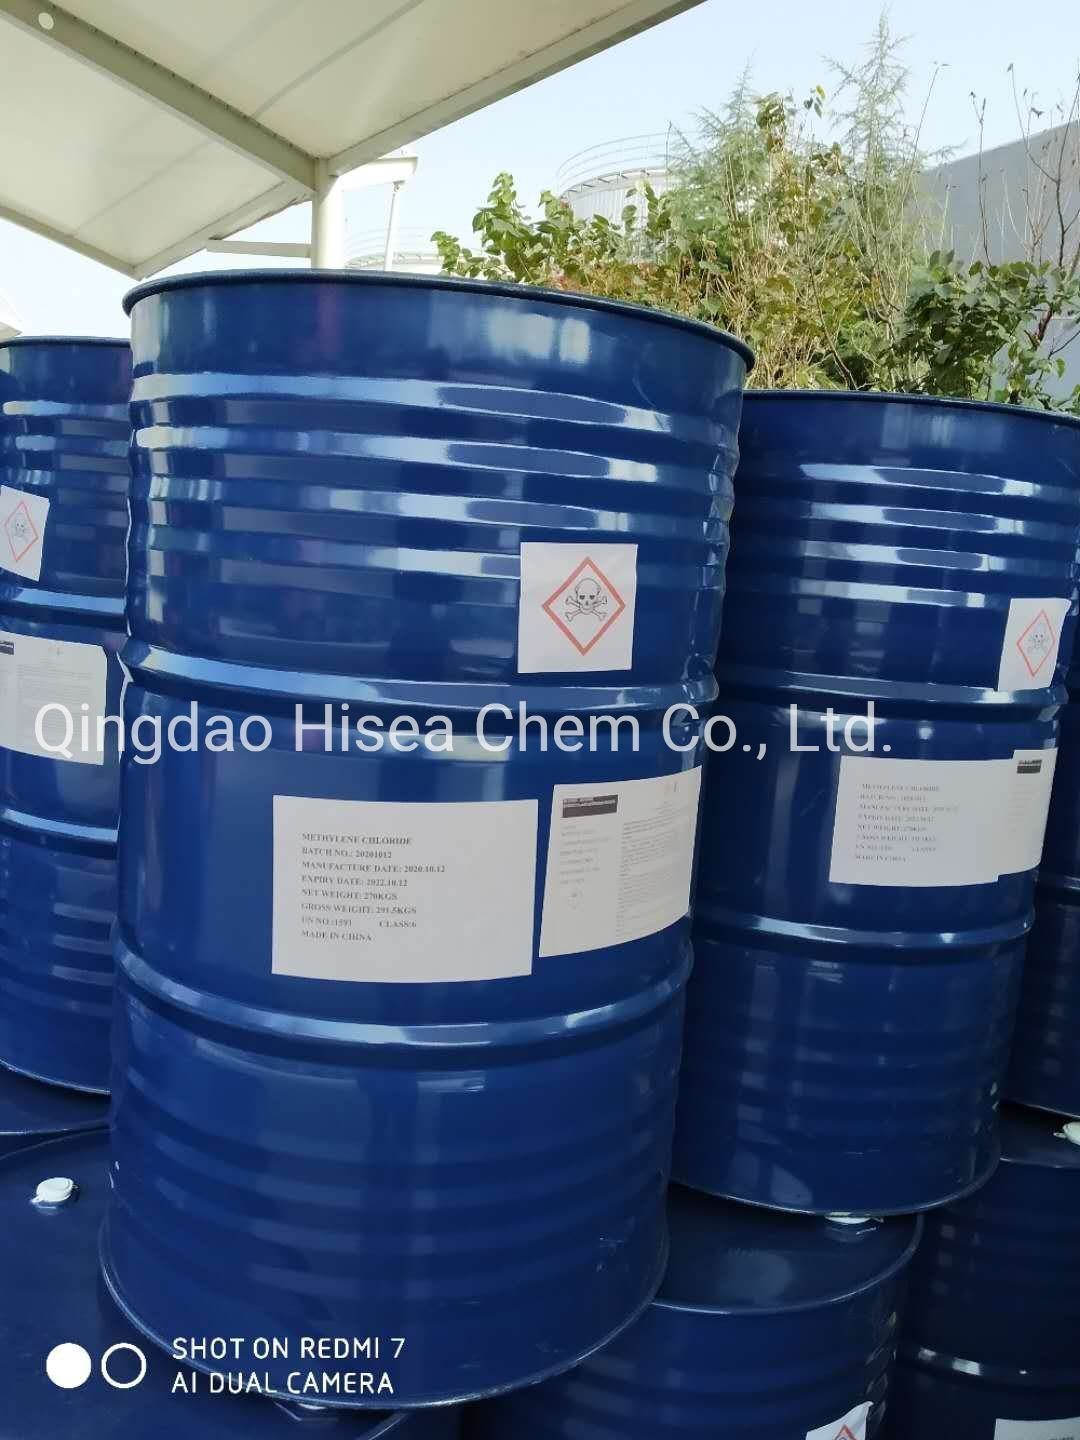 Carbonate de diméthyle/DMC CAS 616-38-6 pour revêtements, adhésifs et agents de nettoyage